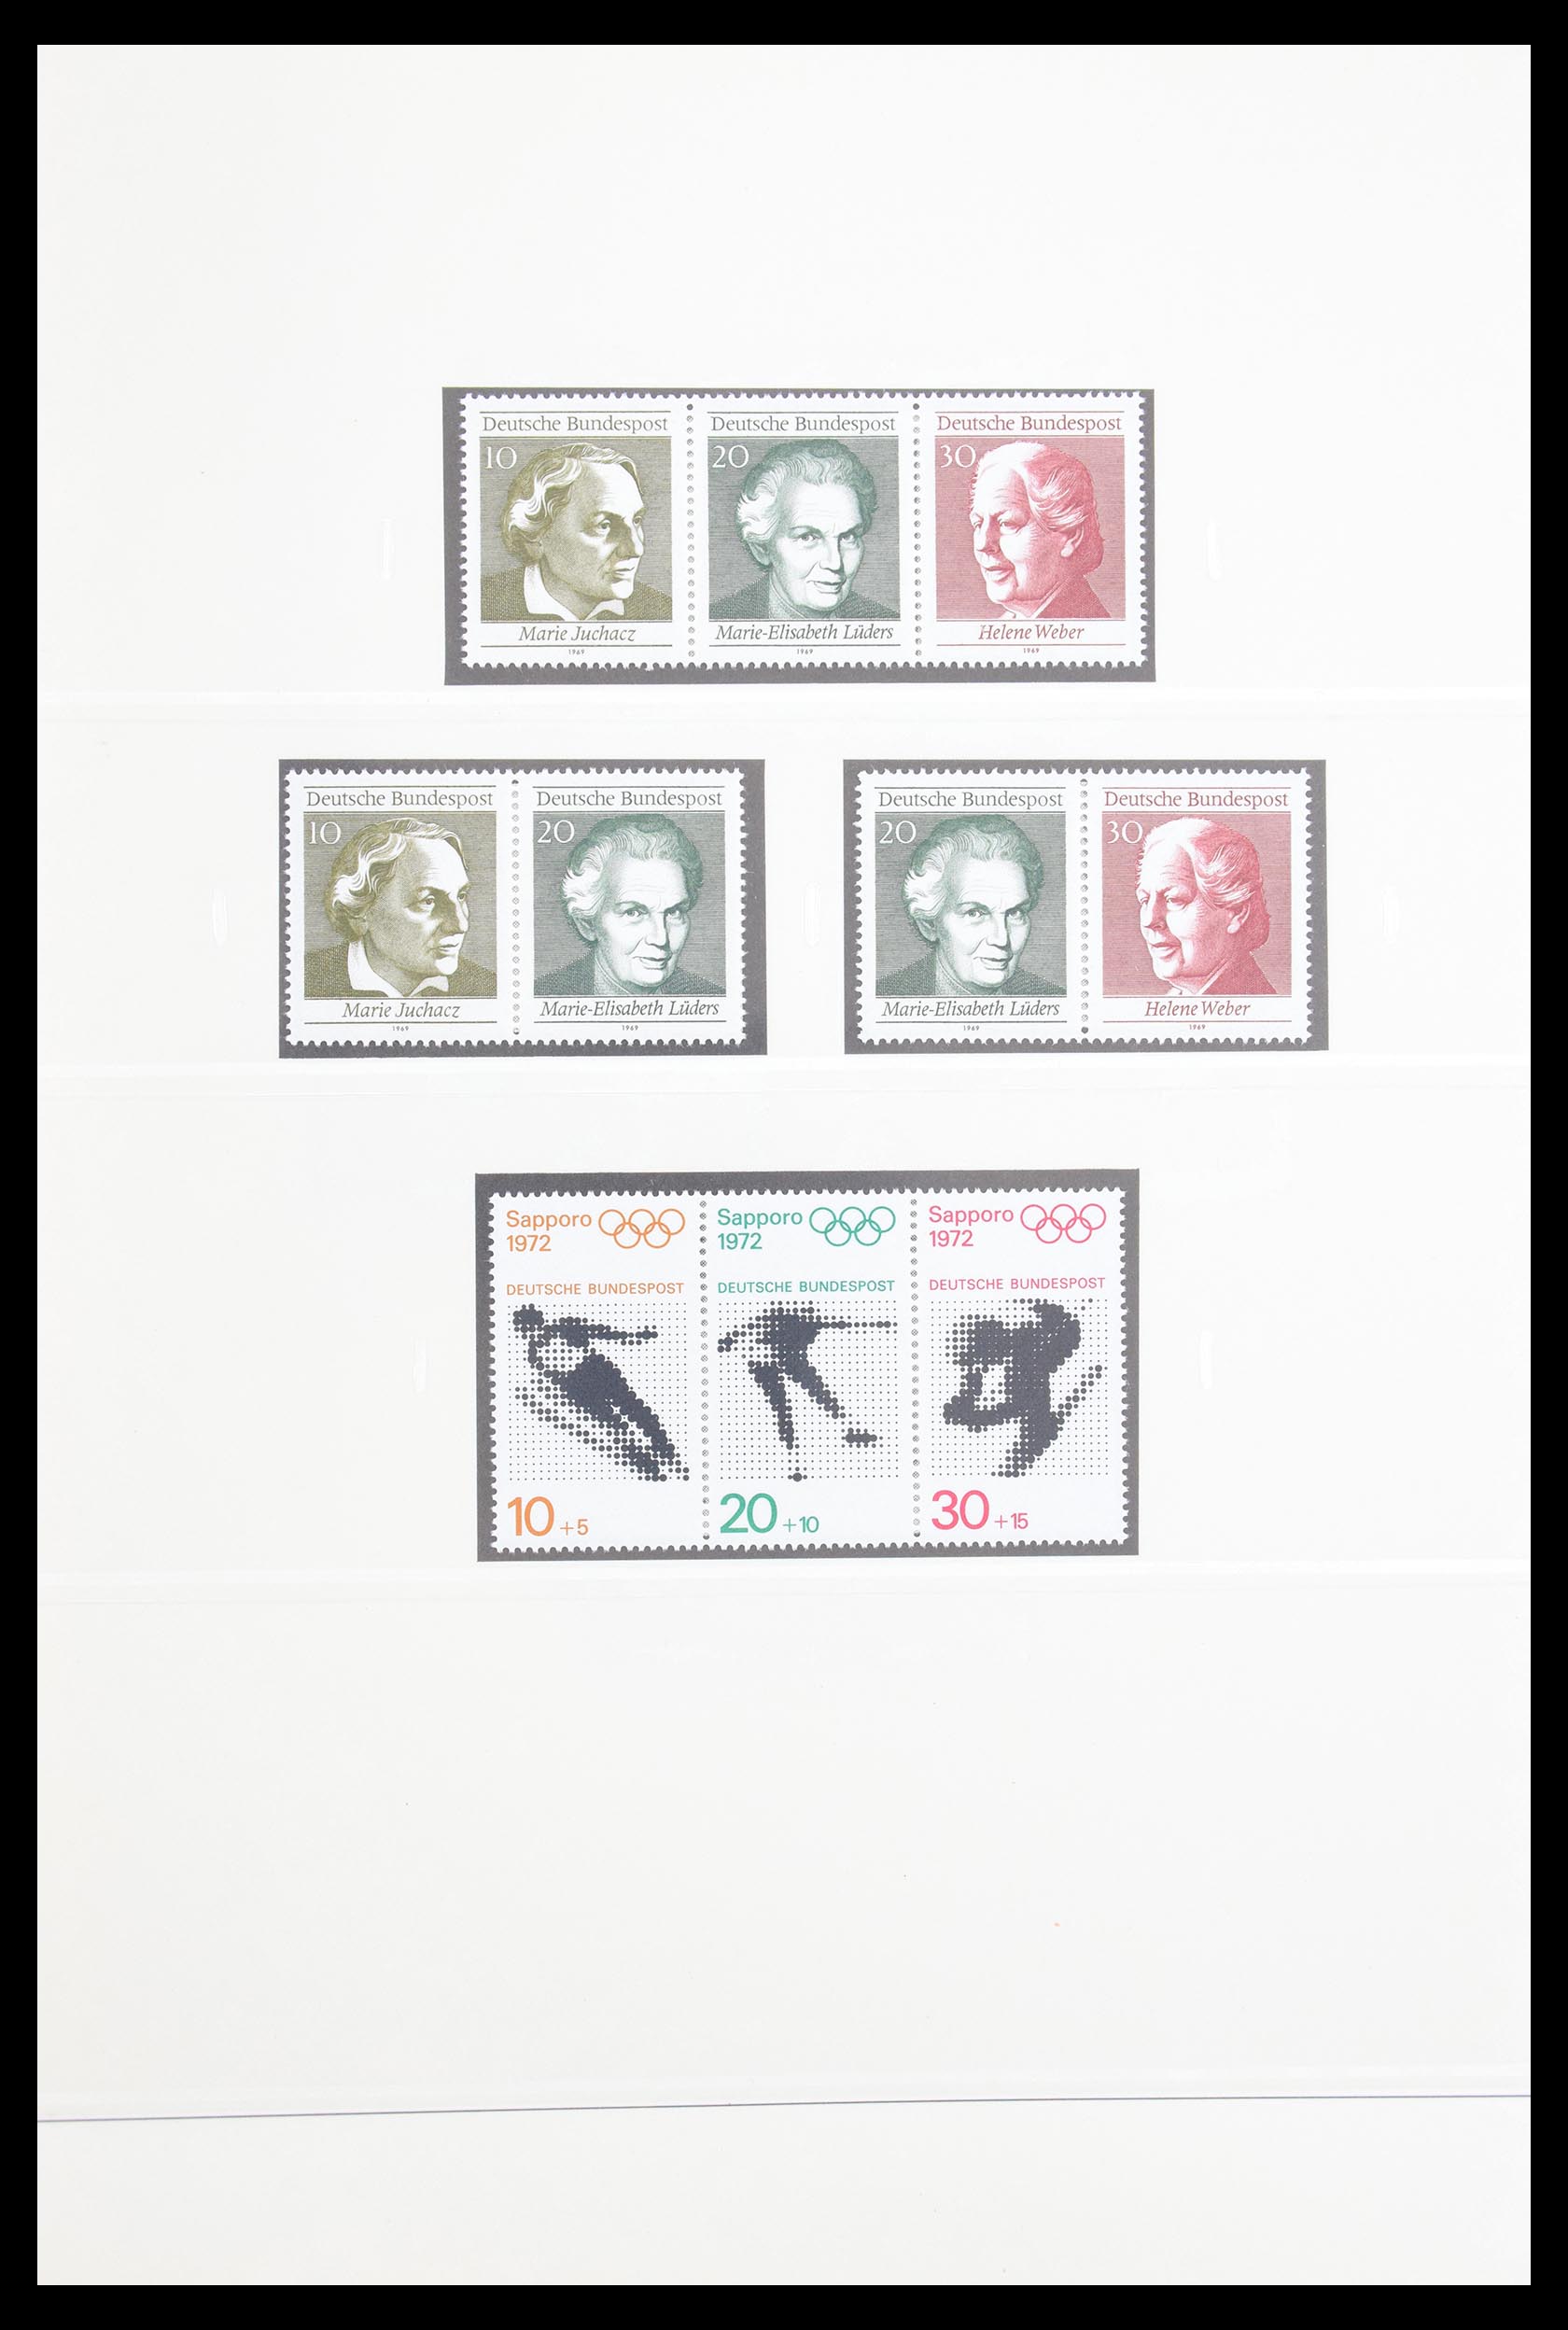 30605 027 - 30605 Bundespost combinaties 1951-1974.